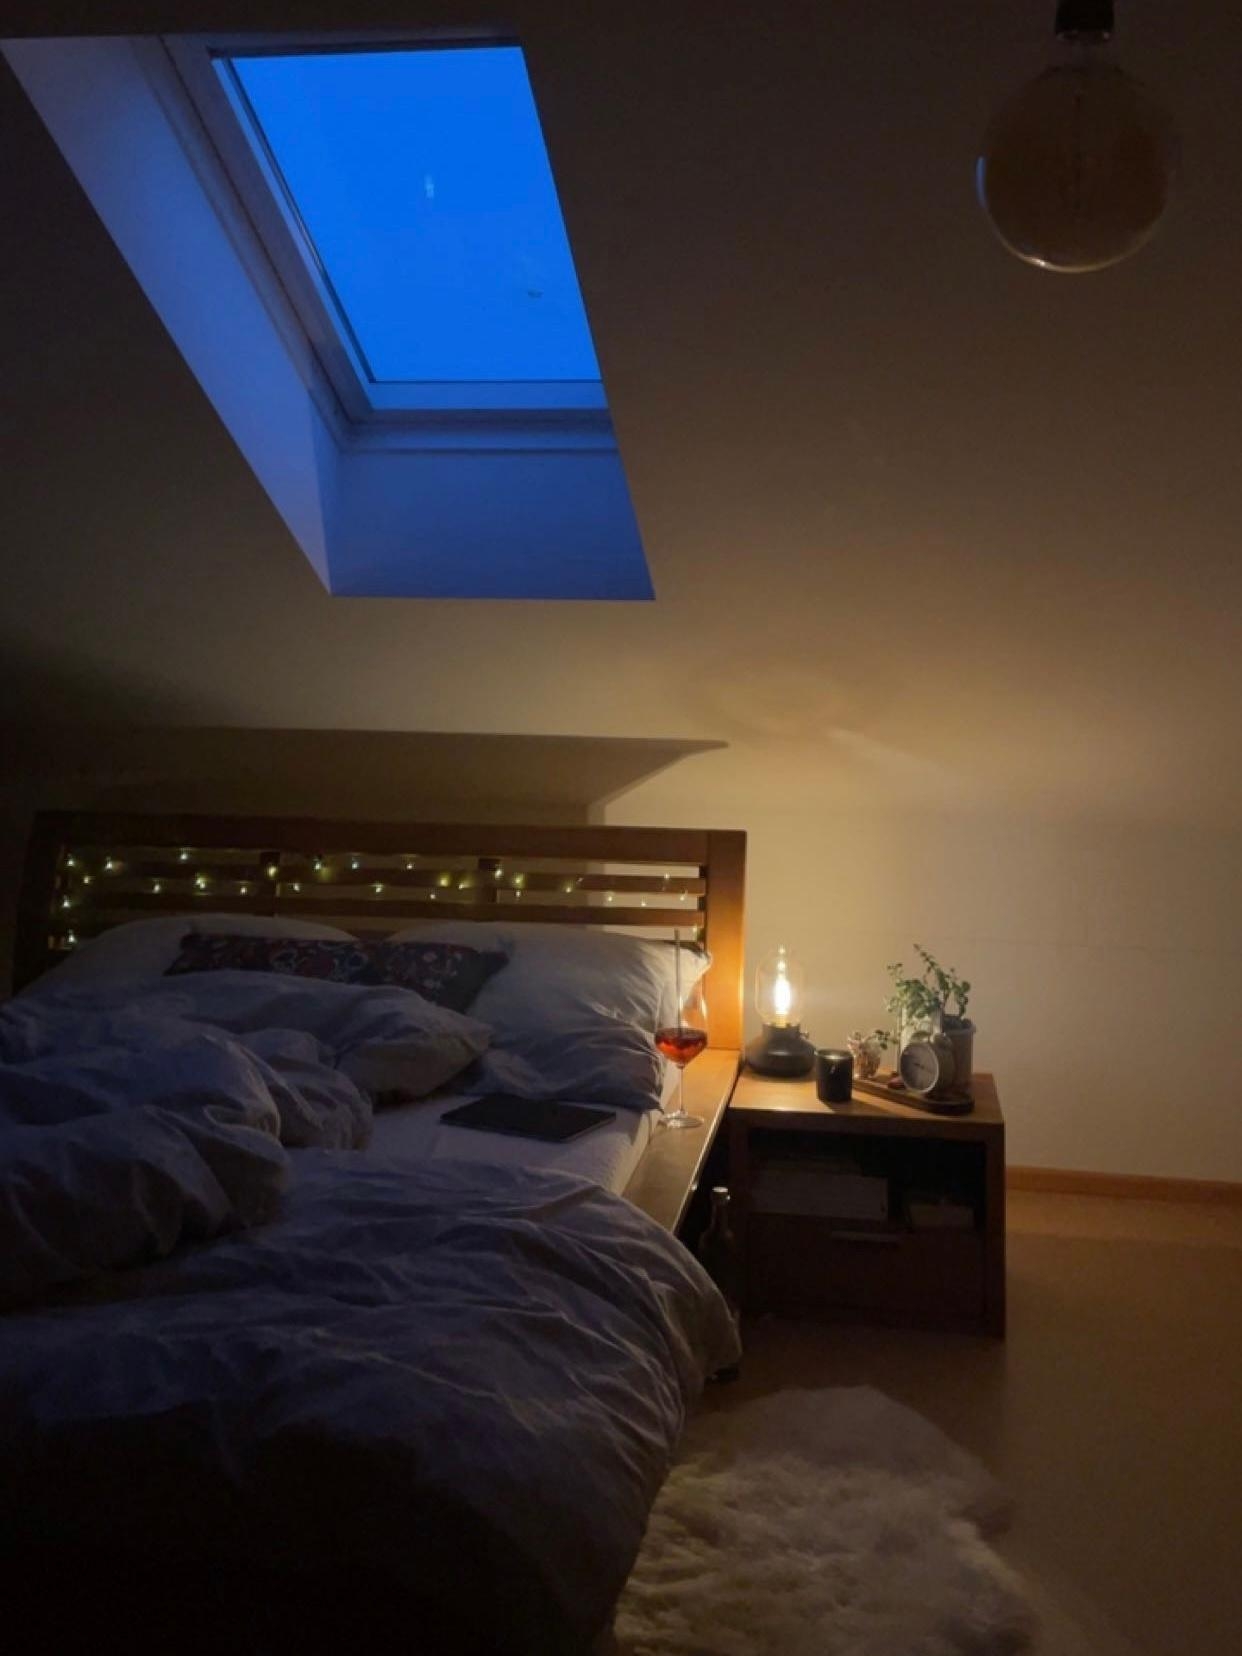 schlafen unter‘m Sternenhimmel 
#dachschräge #schlafzimmer #landleben